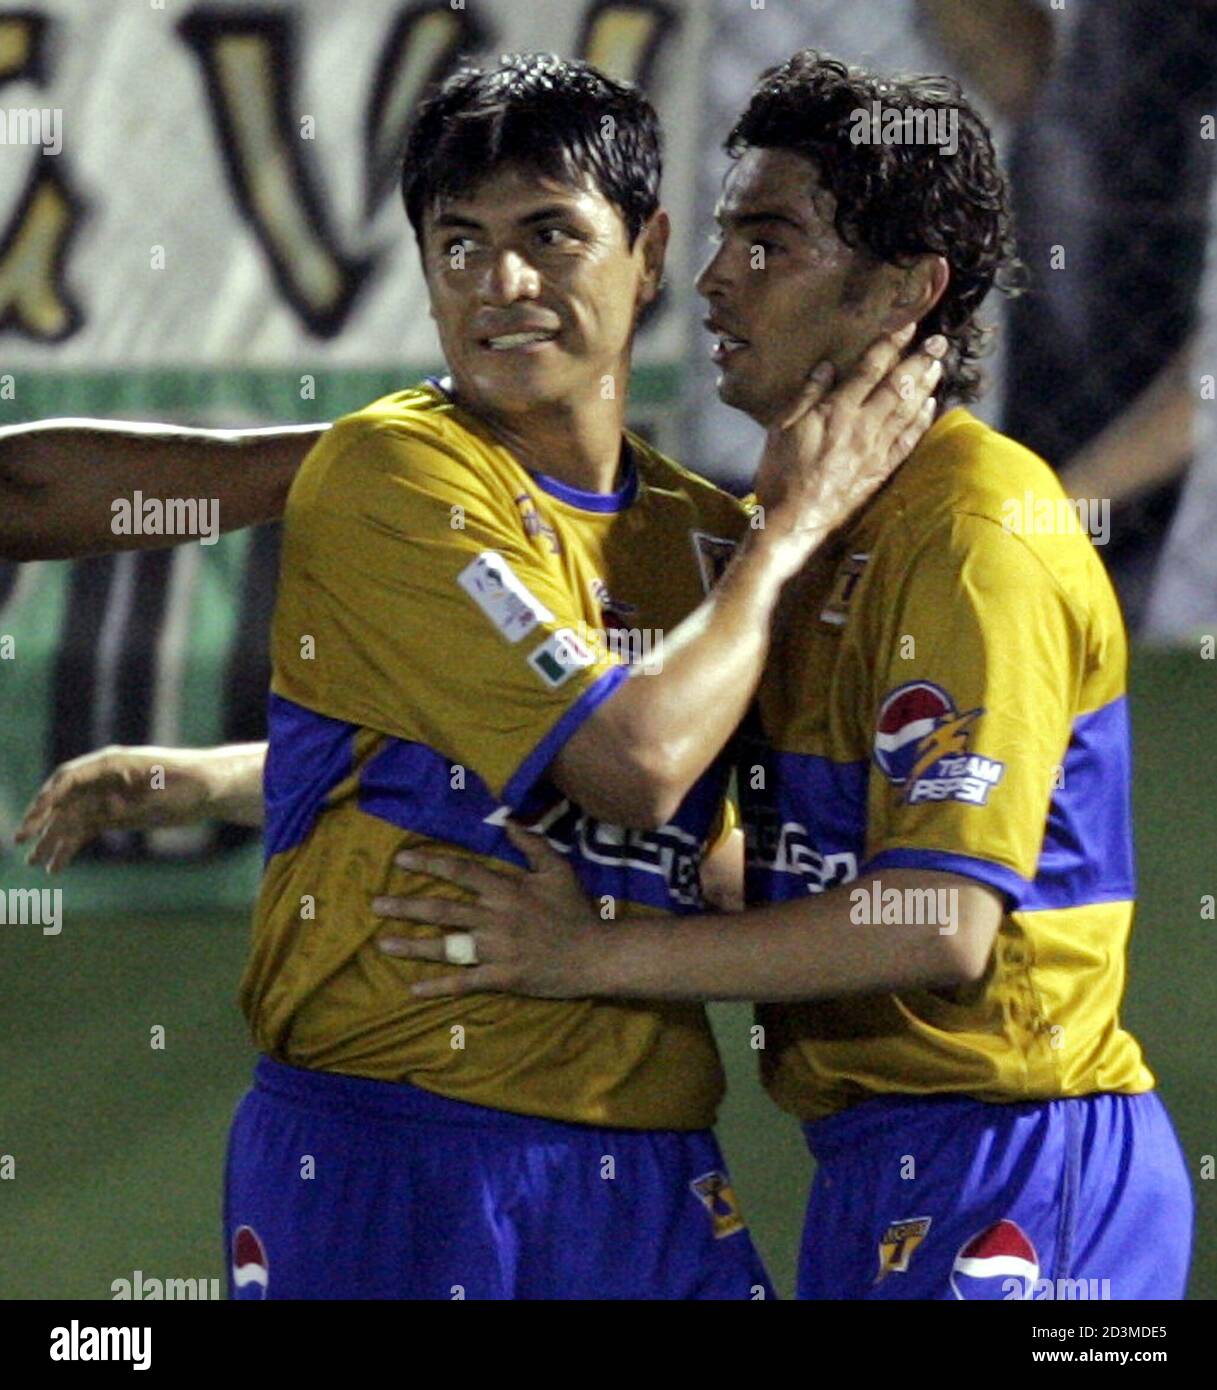 Morales della squadra messicana Tigres festeggia dopo aver segnato contro  argentino lato Banfield a Buenos Aires. Carlos Morales (R), della squadra  di calcio messicana Tigres, è abbracciato dal compagno di squadra Mario